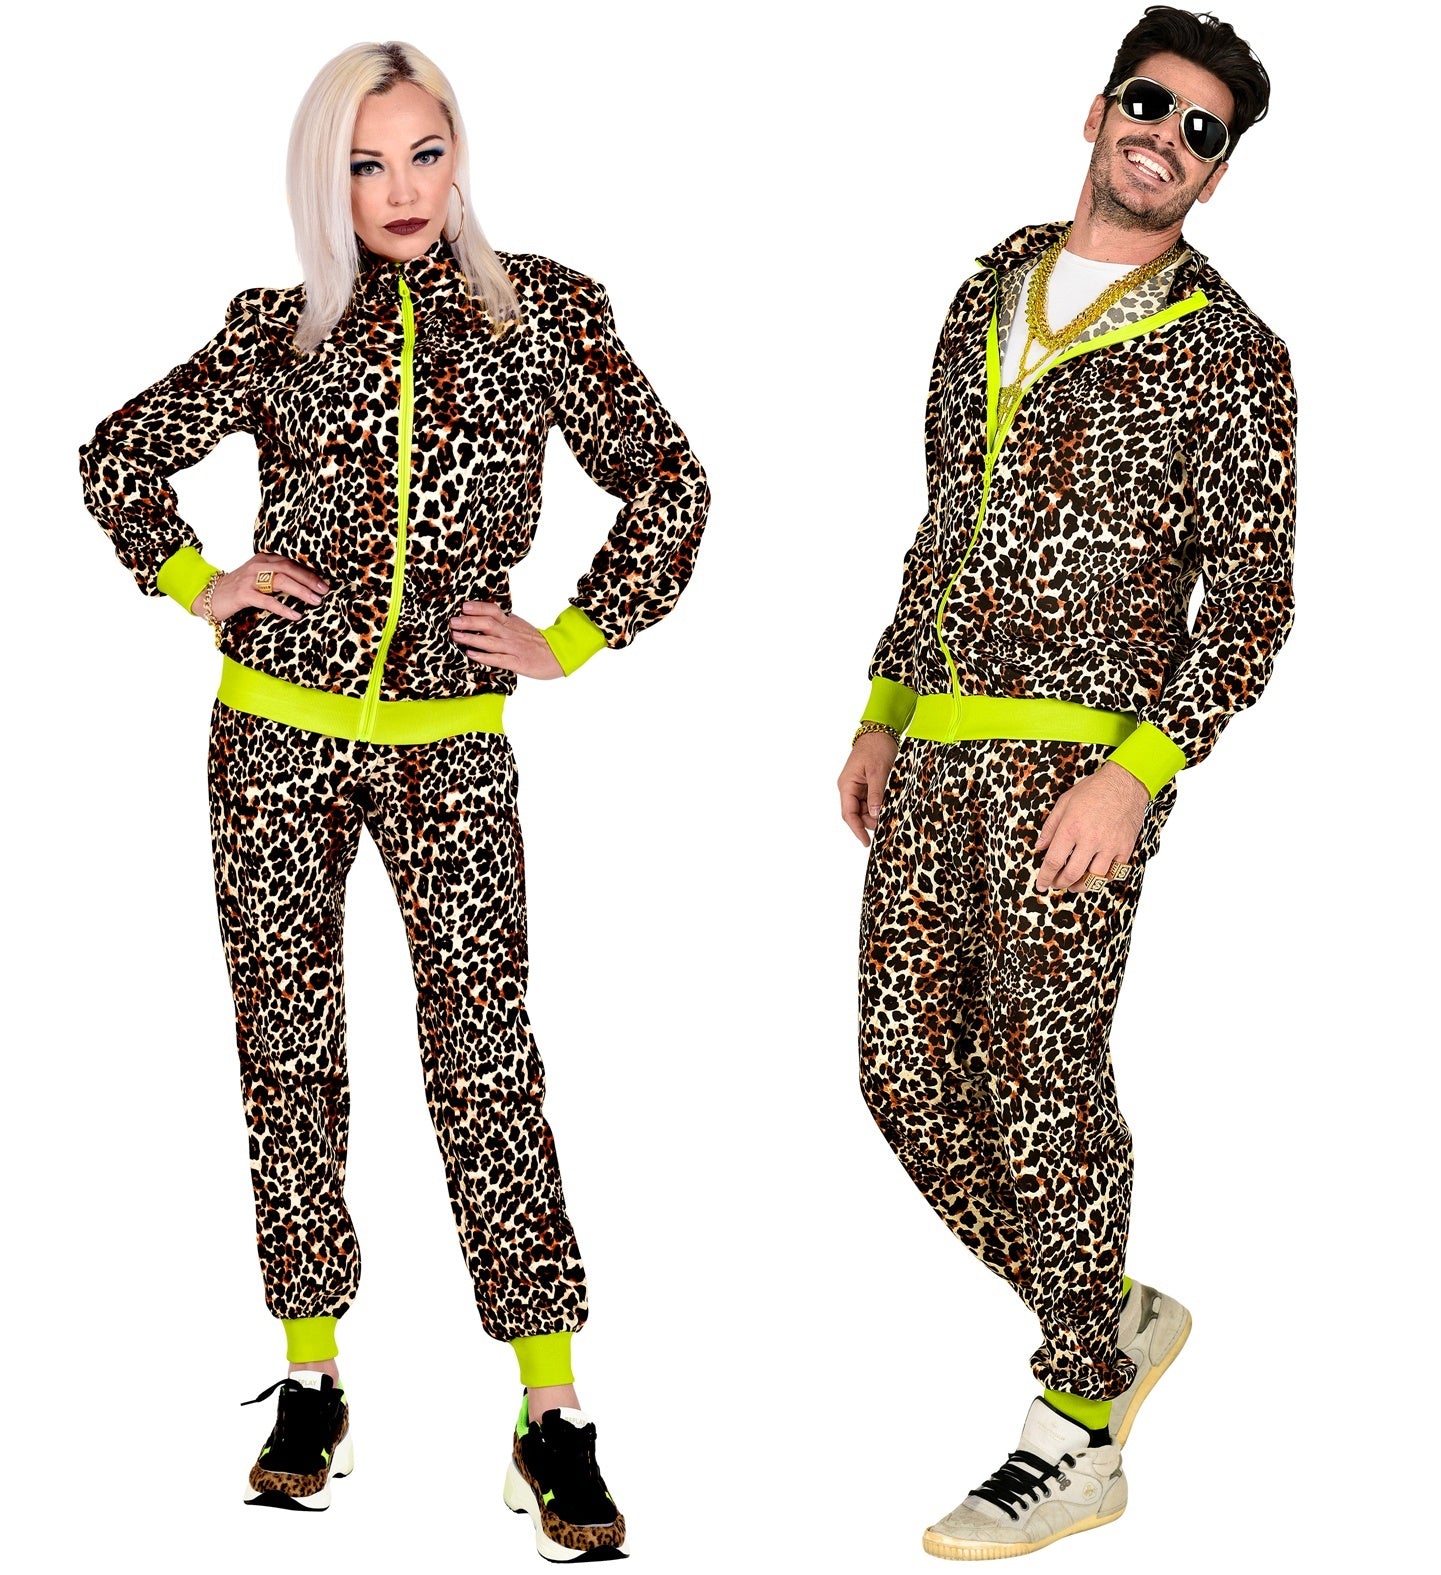 WIDMANN - Jaren '80 luipaard trainingspak kostuum voor volwassenen - S